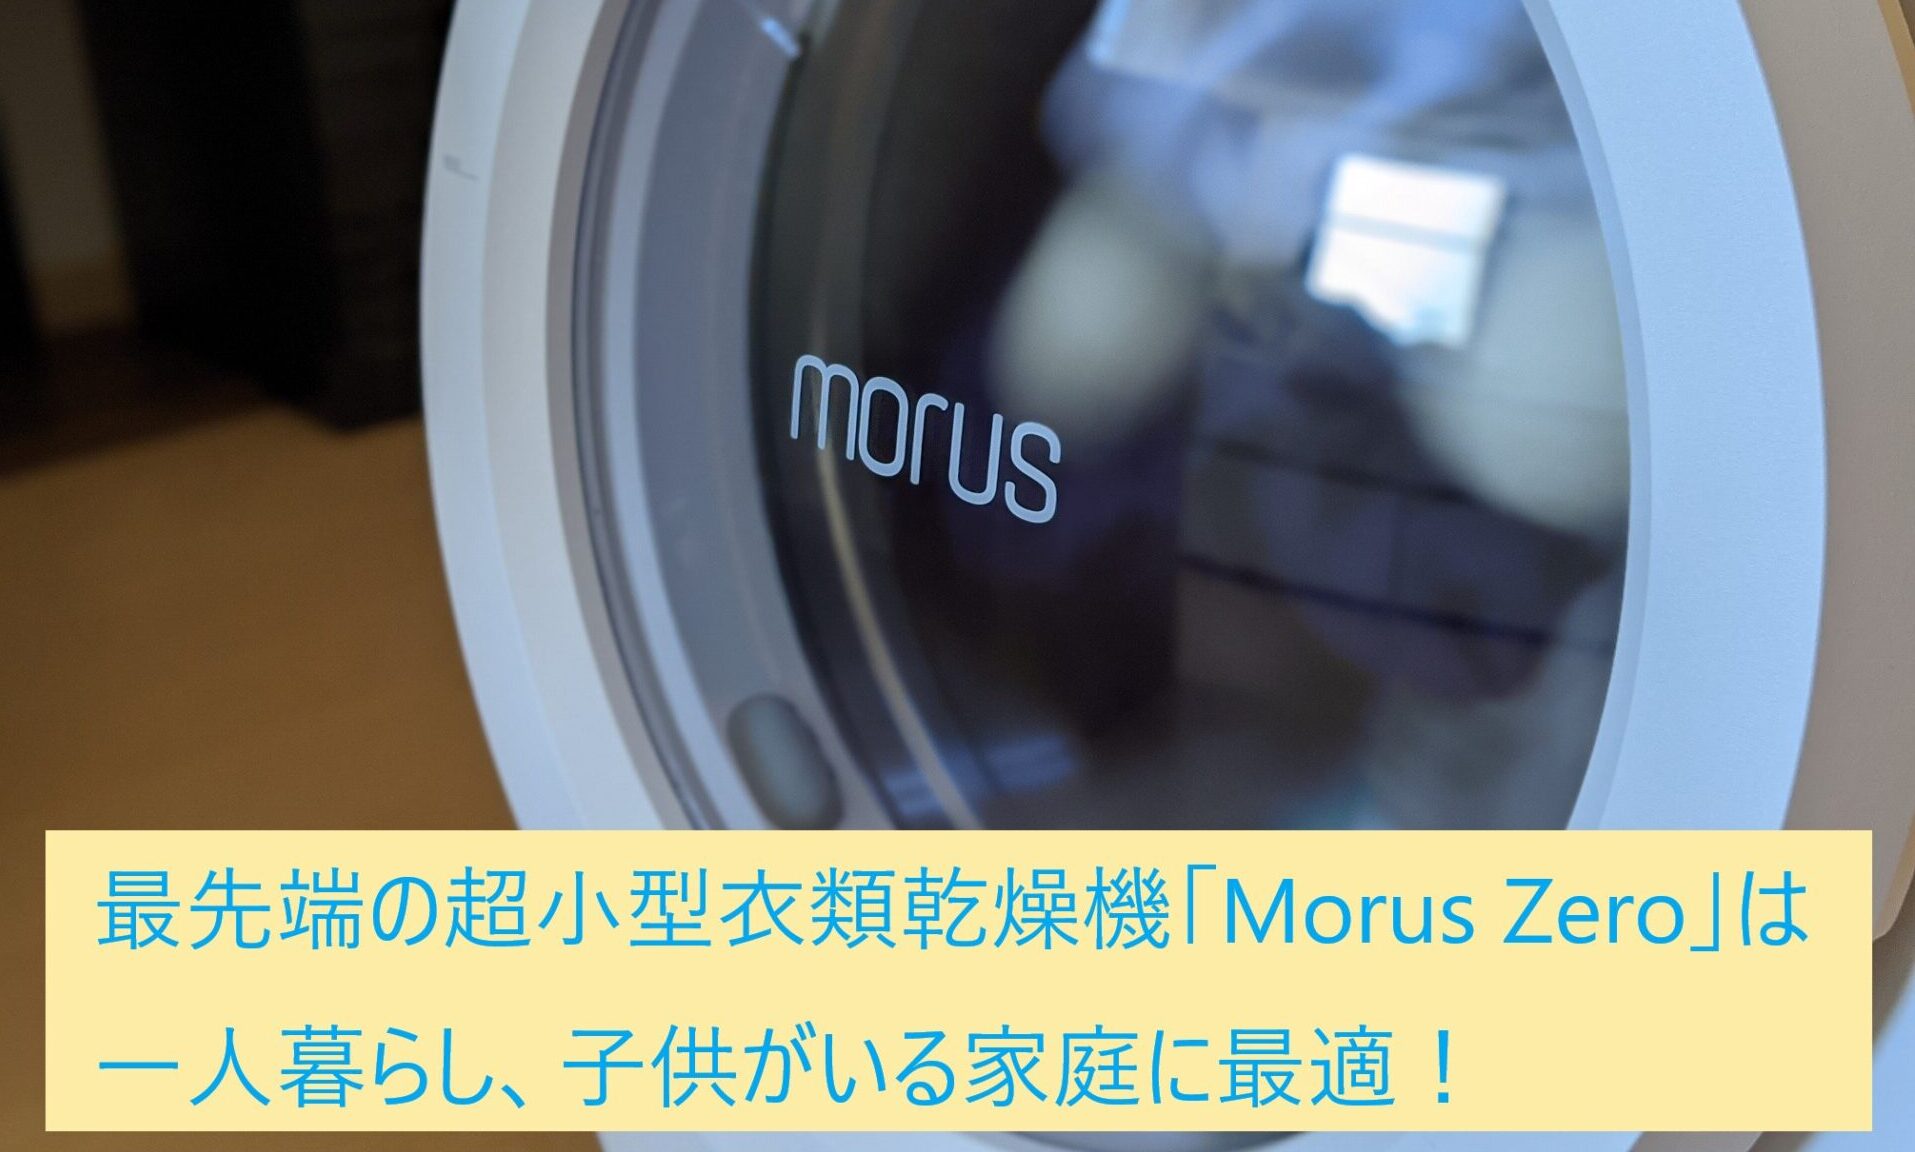 最先端の超小型衣類乾燥機「Morus Zero」は一人暮らし、子供がいる家庭 